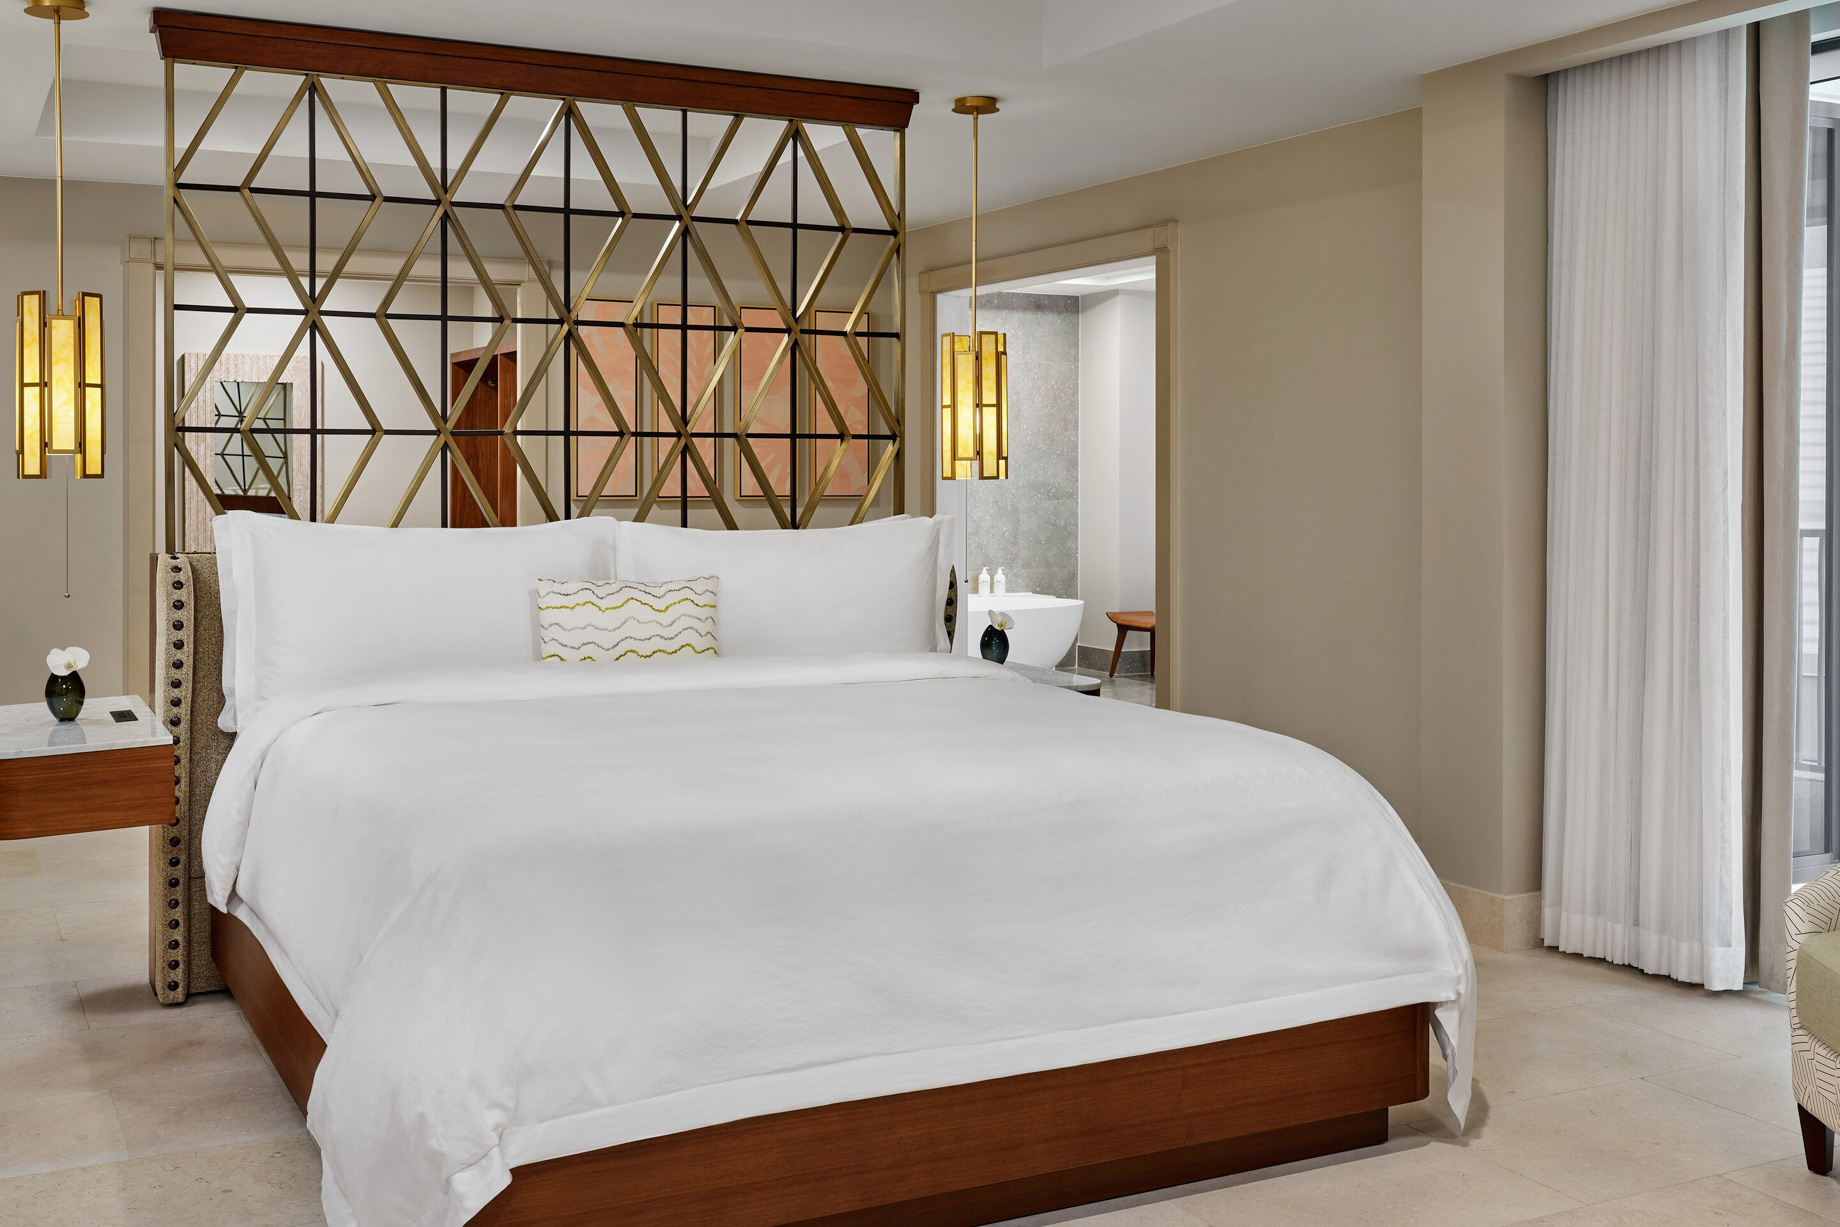 The St. Regis Bermuda Resort - St George's, Bermuda - John Jacob Astor Suite Bedroom